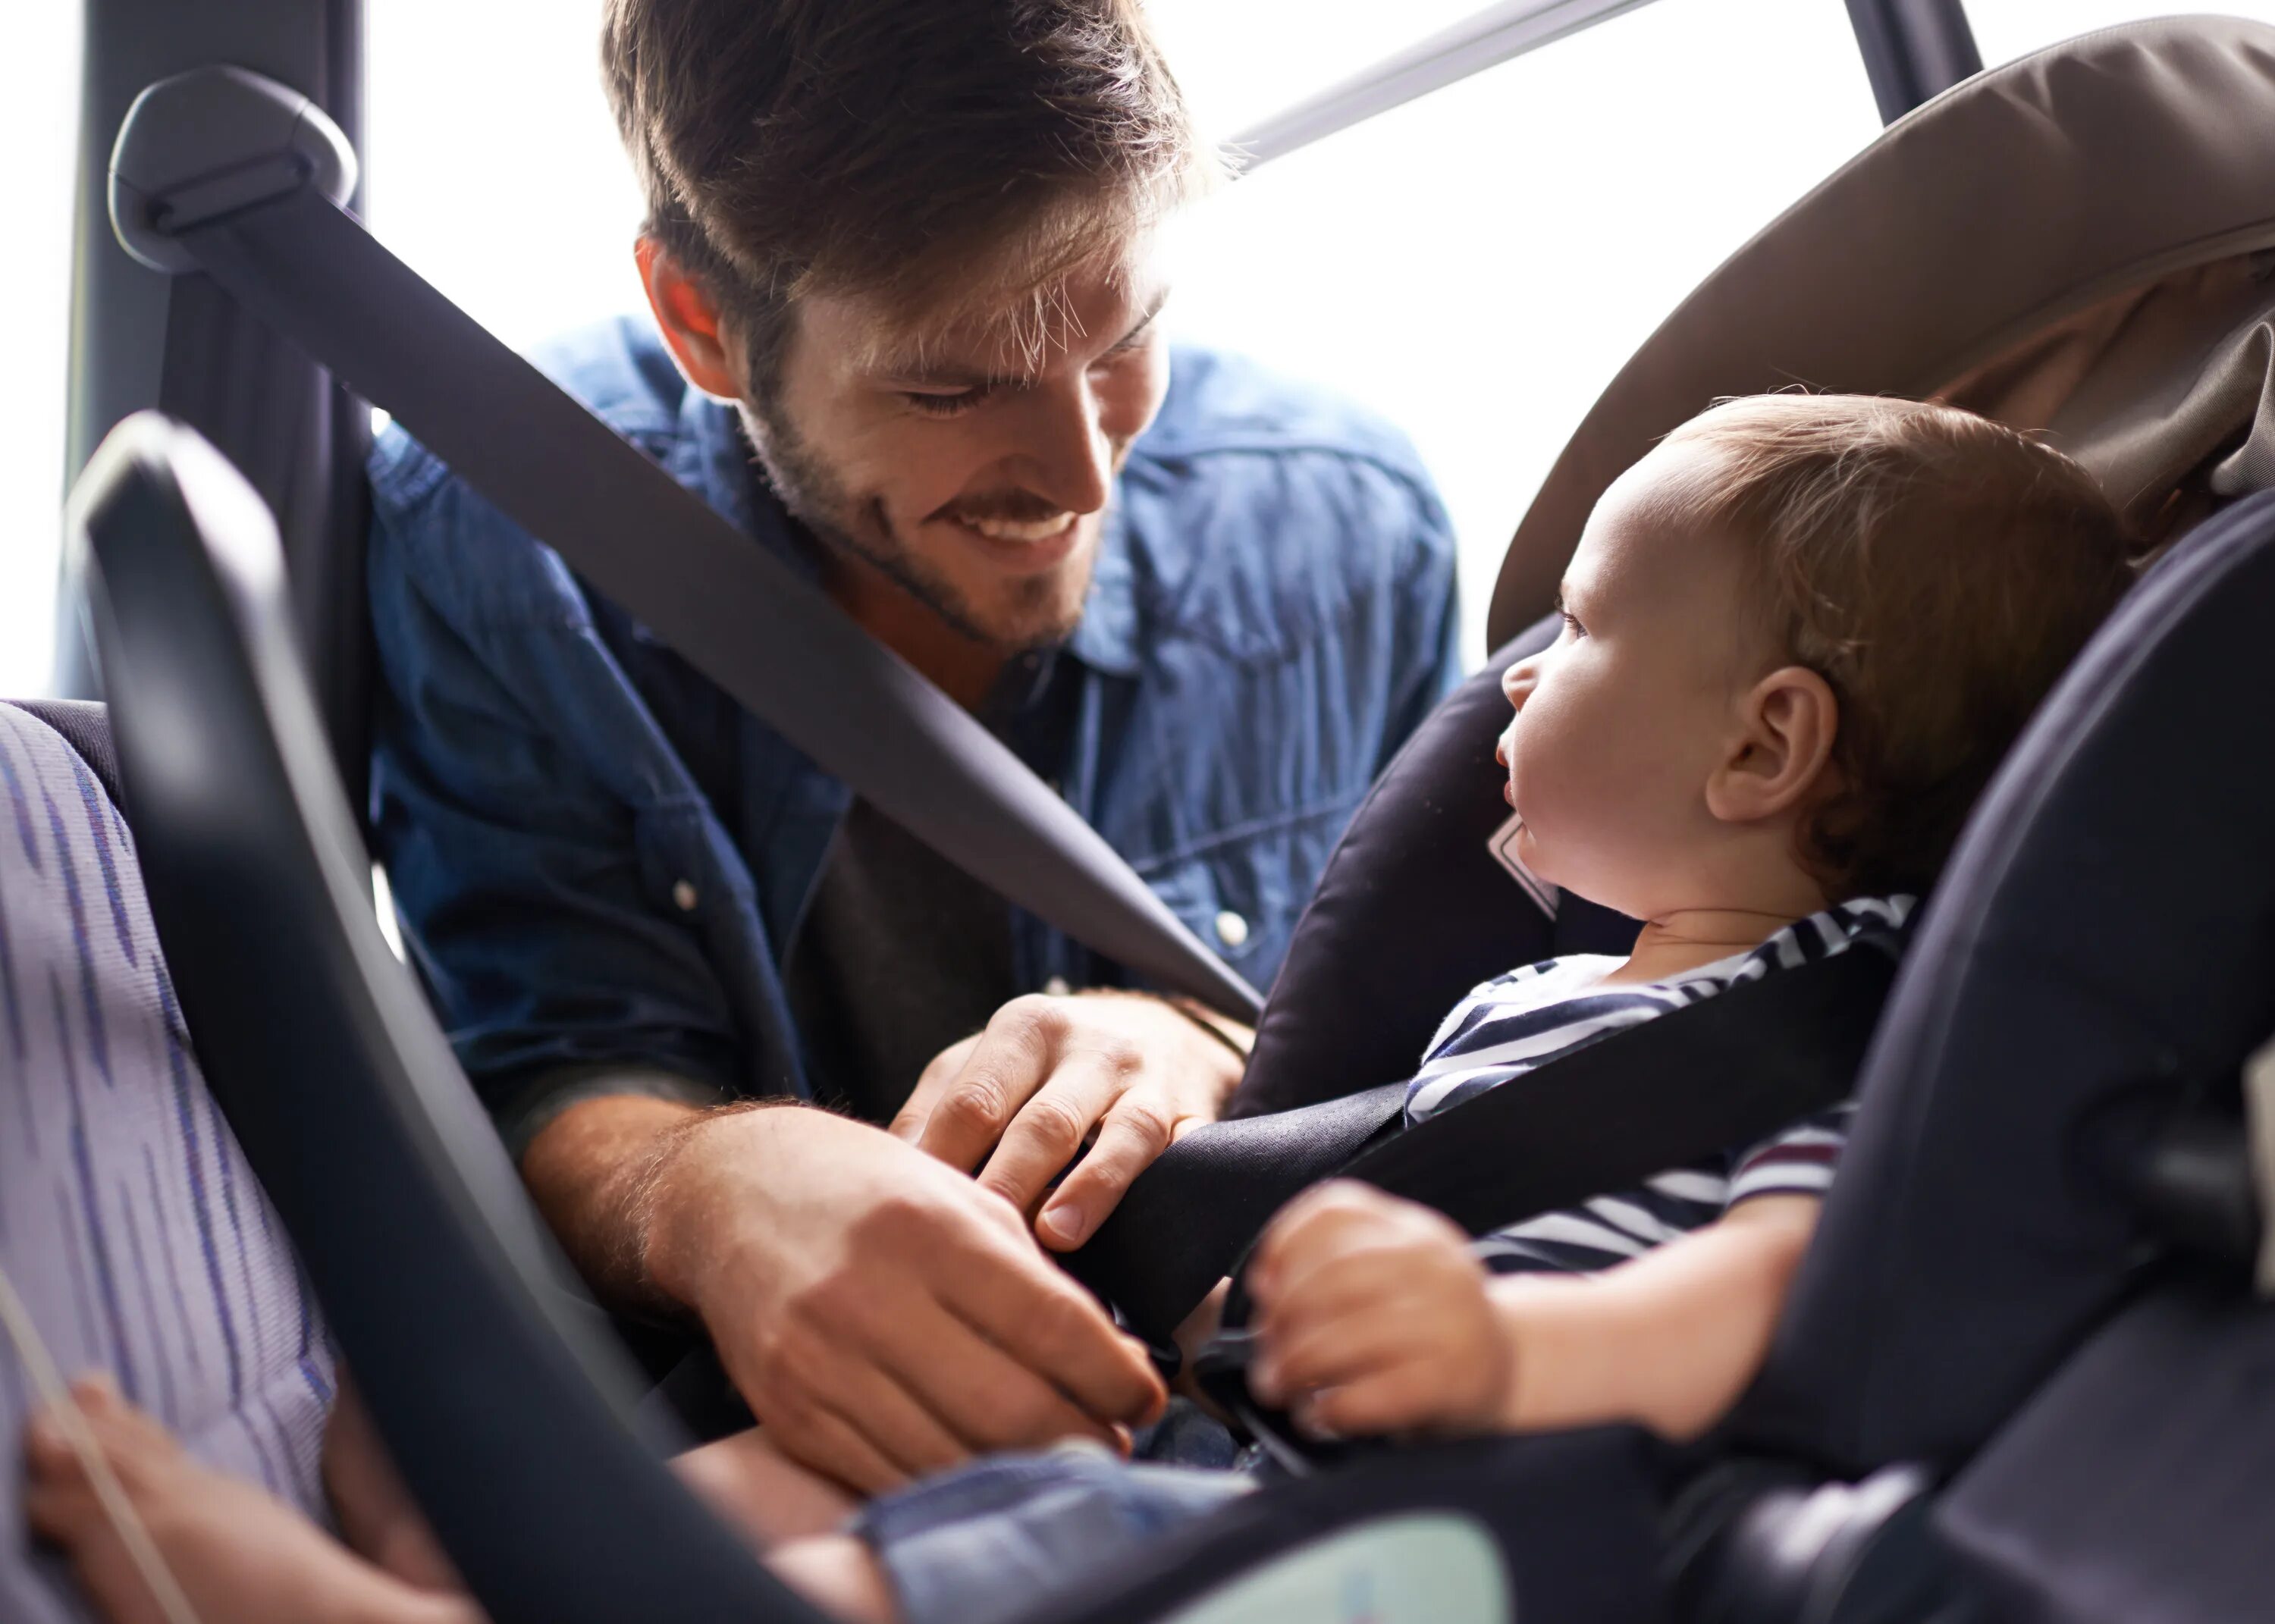 Безопасность в машине на заднем сиденье. Пристегнутый ребенок. Безопасность детей в автомобиле. Ребёнок в автомобиле пристёгнут. Автомобиль для детей.